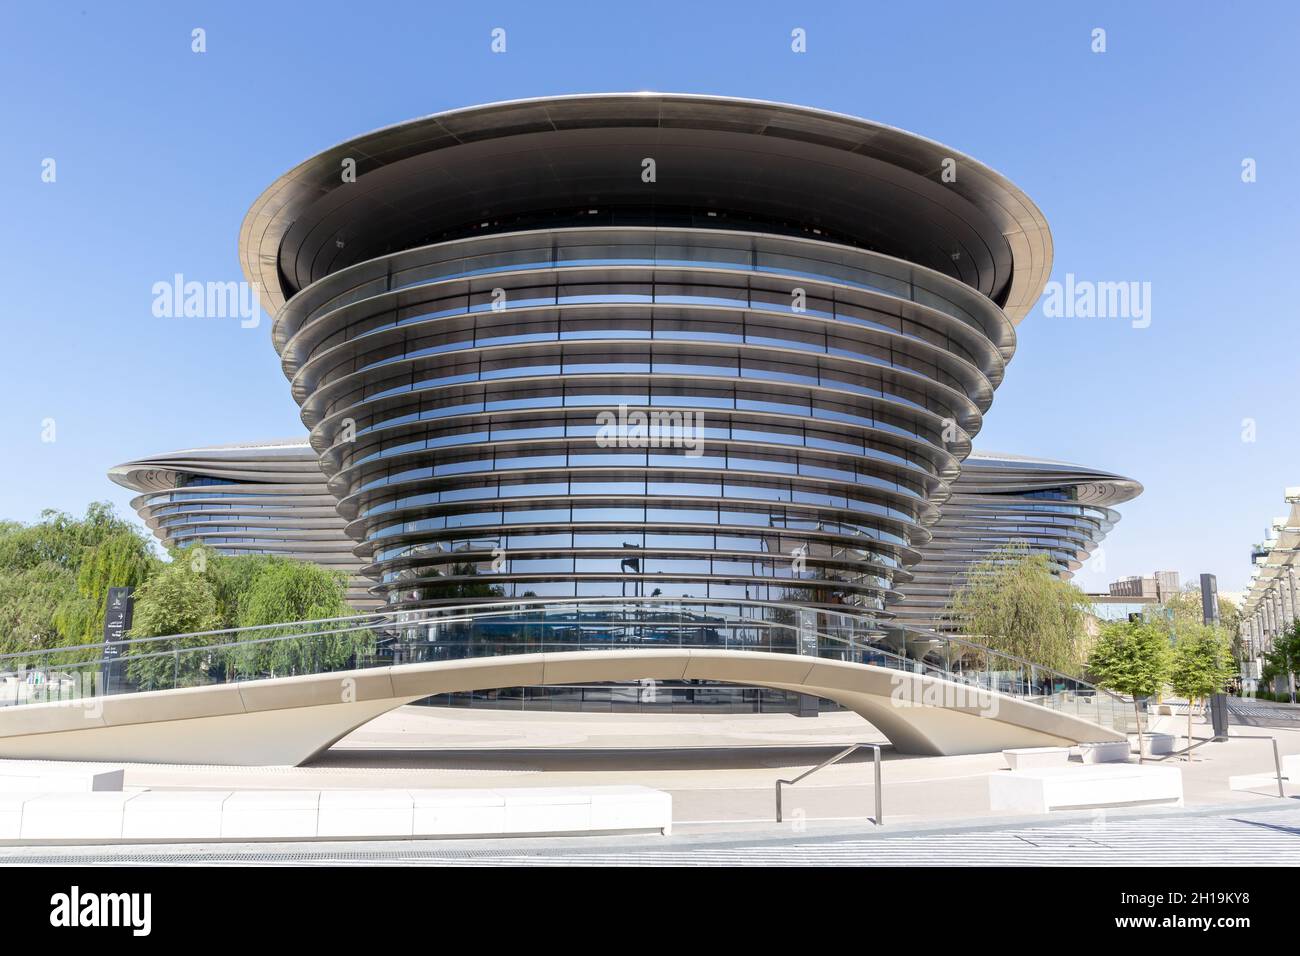 Dubai, VAE, 17.10.2021. Alif - The Mobility Pavilion auf dem Gelände der Expo 2020, modernes futuristisches Gebäude, symmetrische Ansicht. Stockfoto